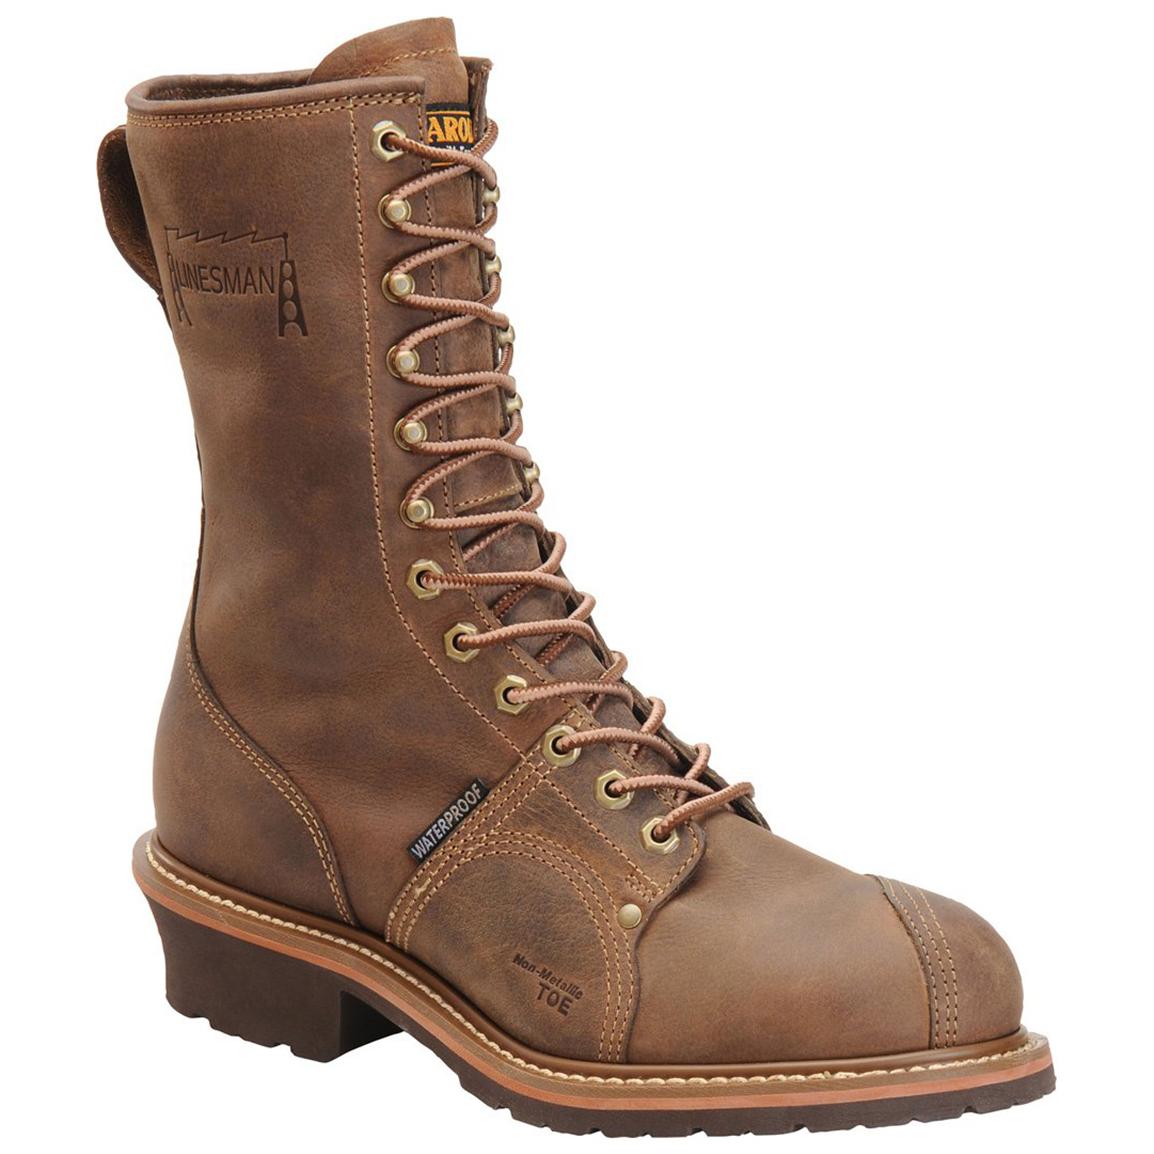 Men's Carolina® 10 inch Waterproof Composite Toe Linesman Work Boots, Brown